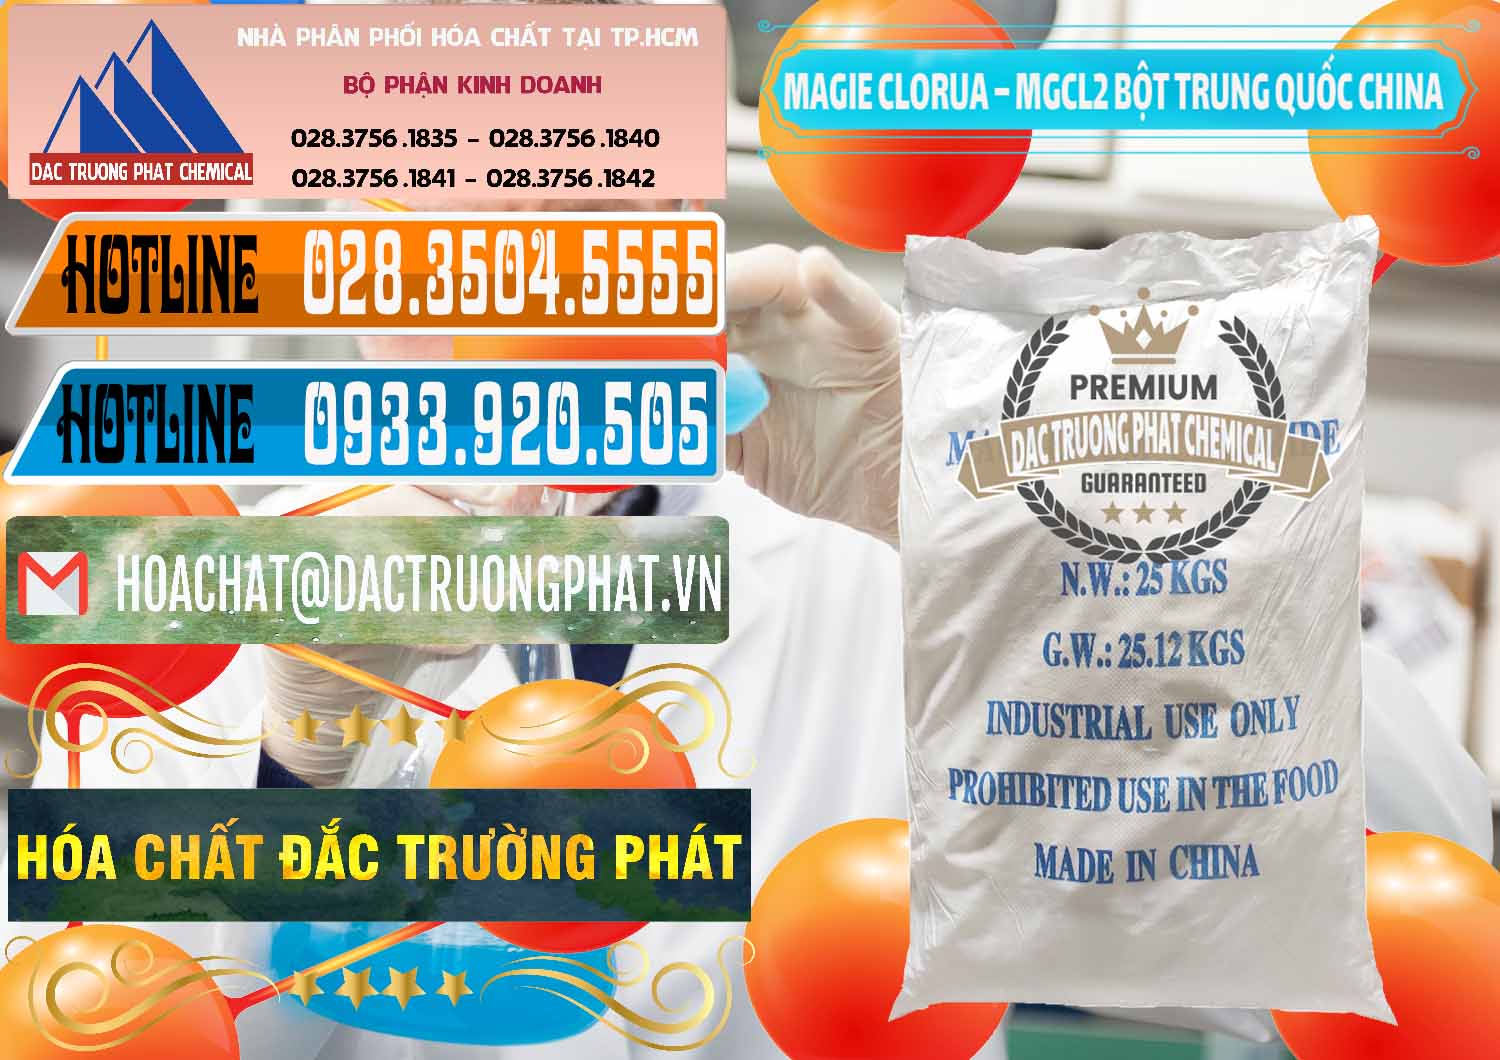 Nơi chuyên cung cấp - bán Magie Clorua – MGCL2 96% Dạng Bột Bao Chữ Xanh Trung Quốc China - 0207 - Cty chuyên phân phối ( kinh doanh ) hóa chất tại TP.HCM - stmp.net